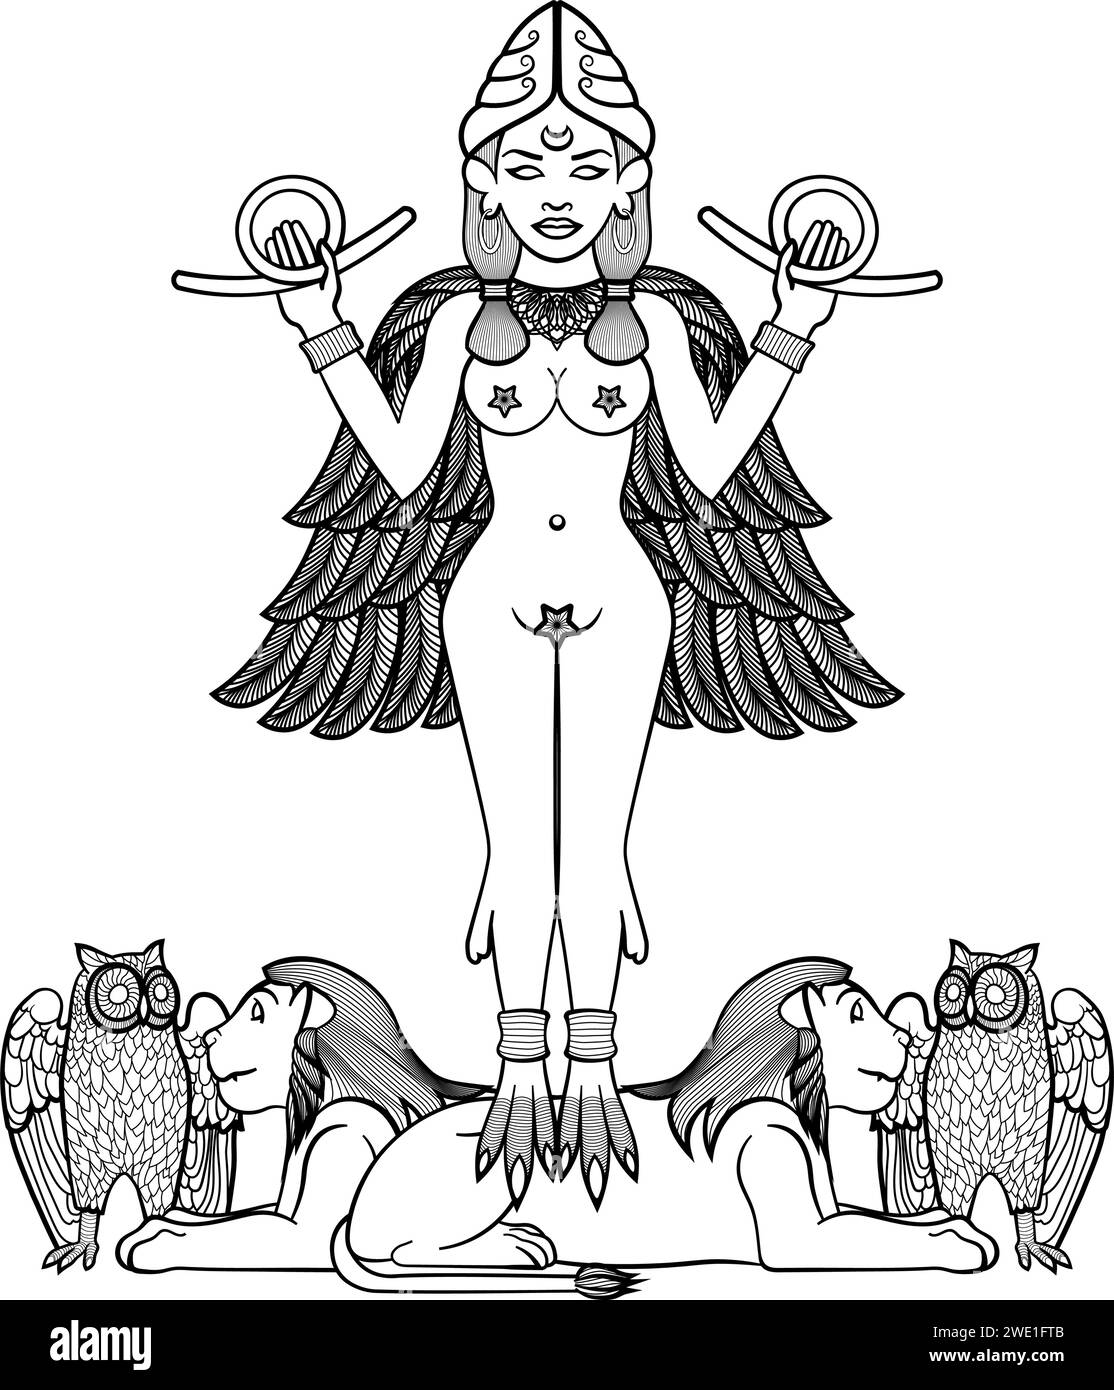 Lilith, una poderosa figura femenina, se levanta con las manos levantadas y las alas extendidas, sobre los leones. Ilustración del Vector